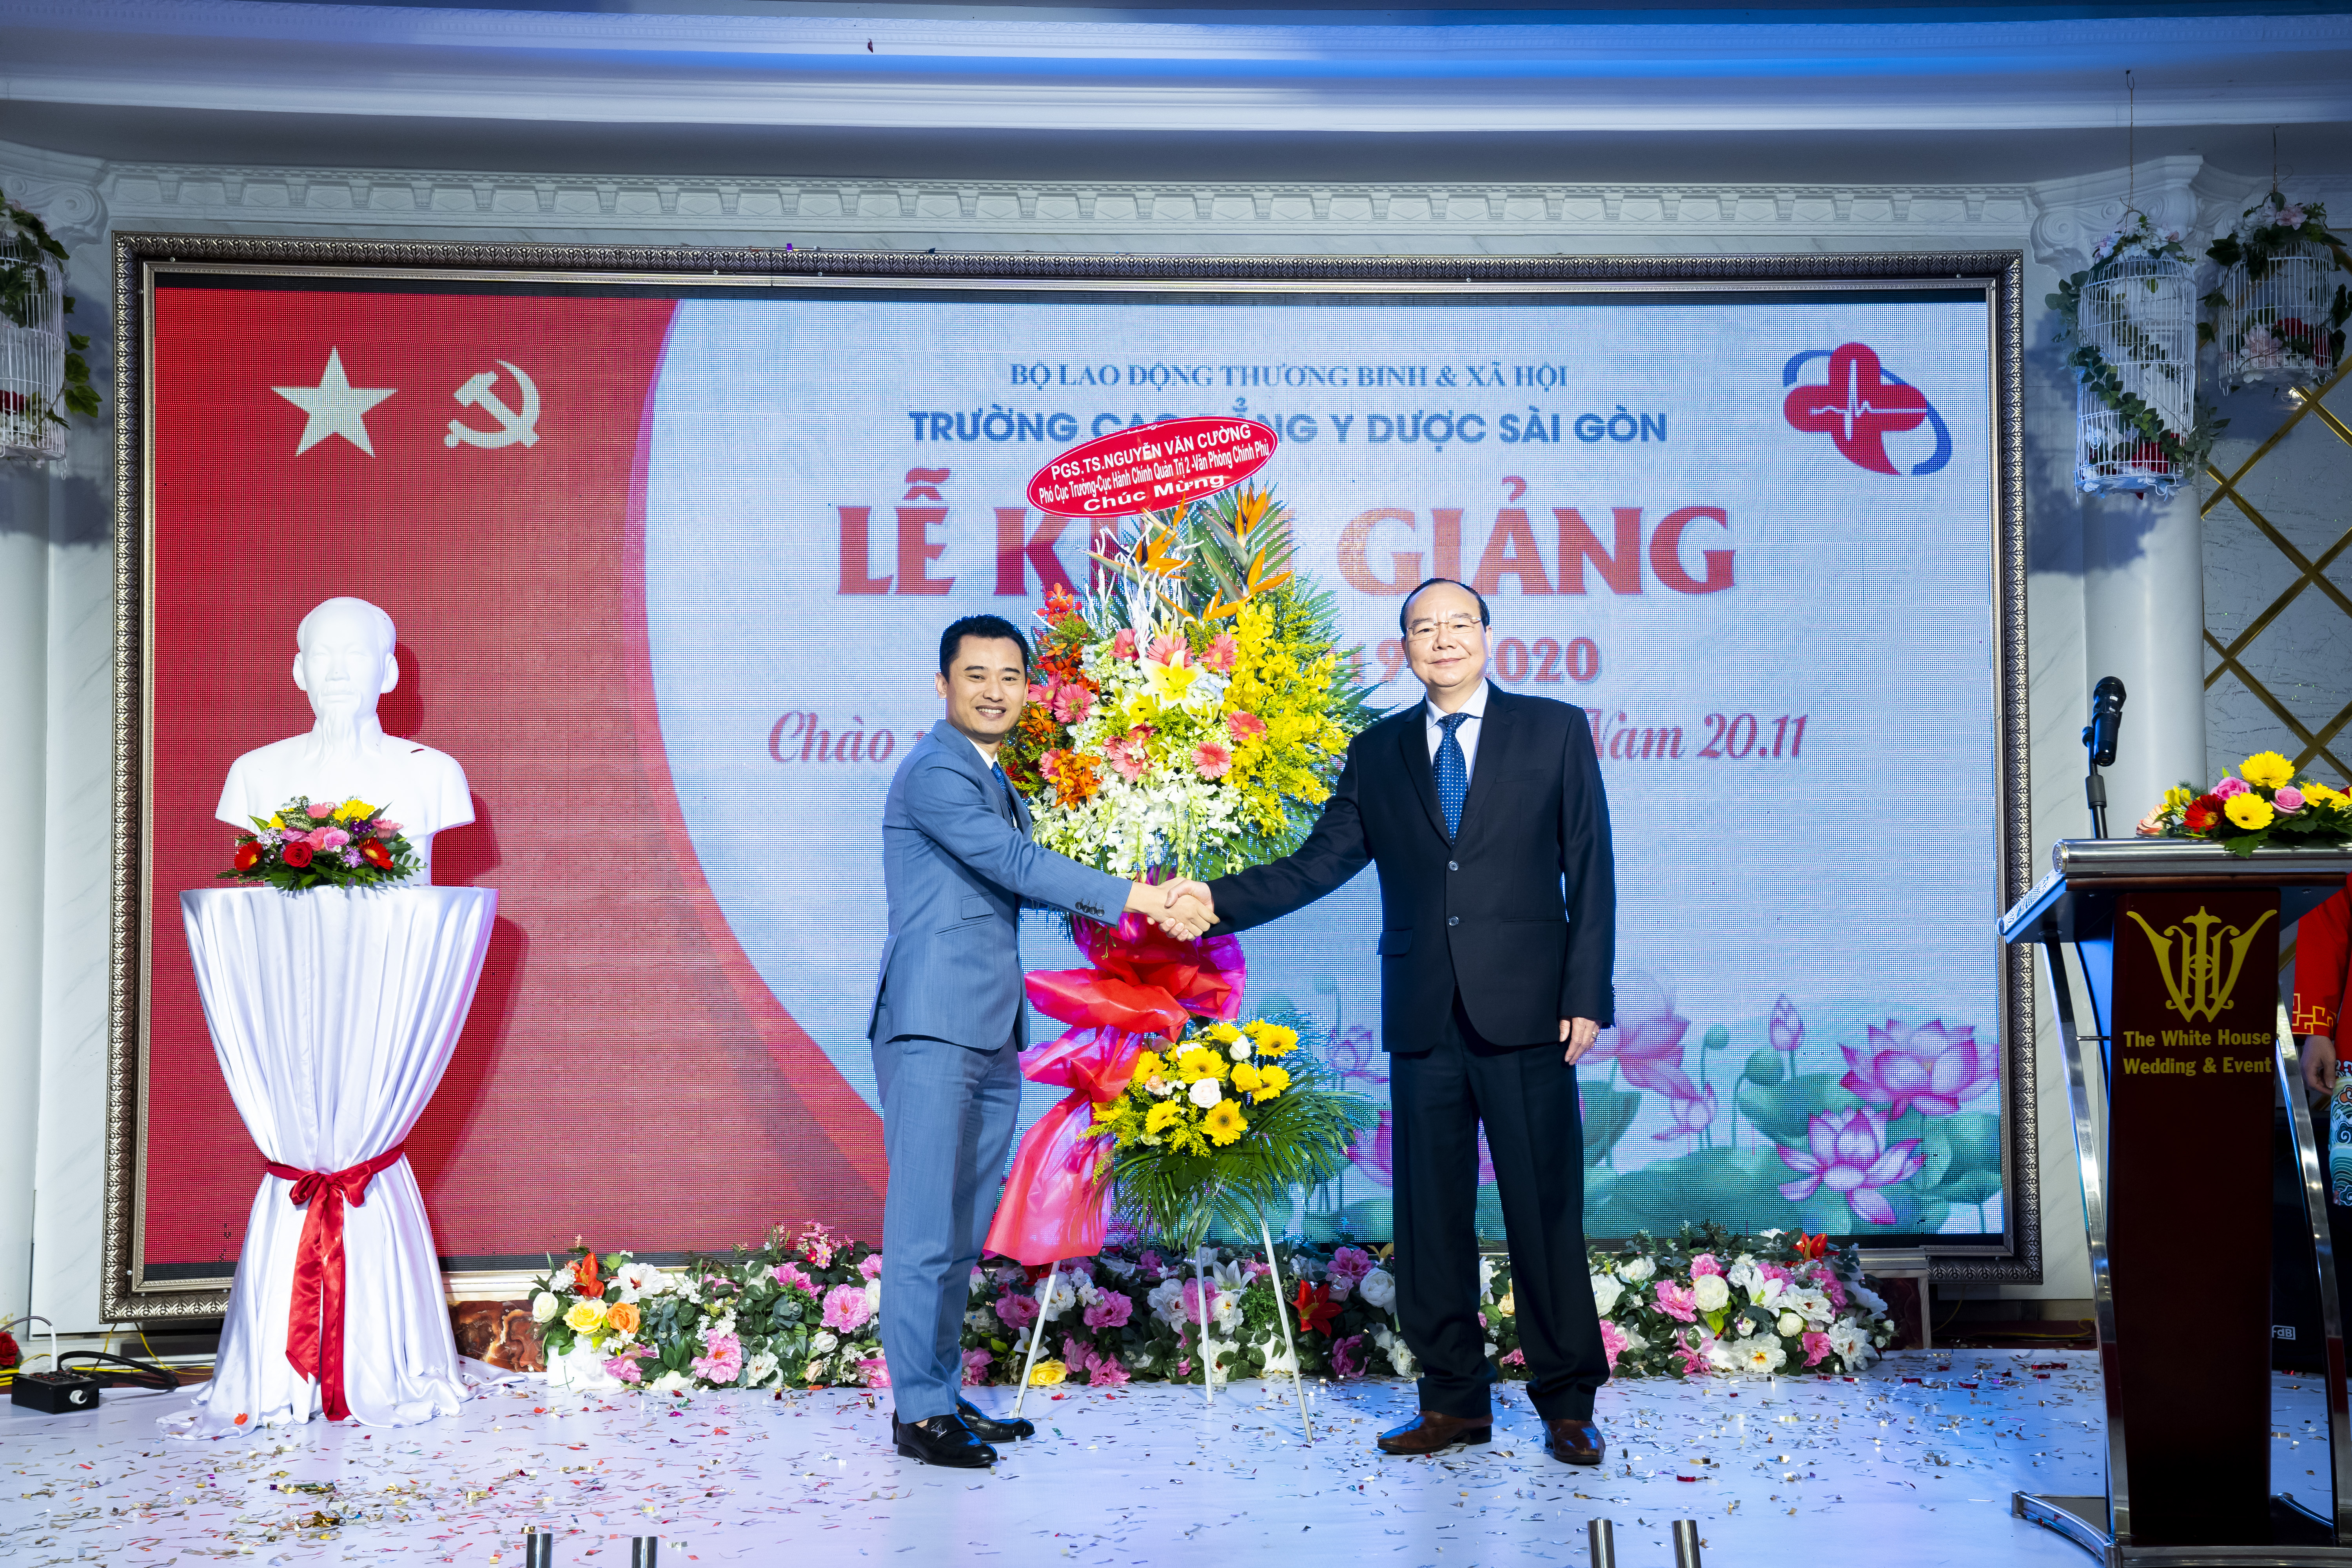 PGS. TS Nguyễn Văn Cường - Nguyên Phó Cục trưởng - Cục Hành Chính Quản trị 2 - Văn Phòng Chính Phủ trao tặng hoa trong buổi lễ